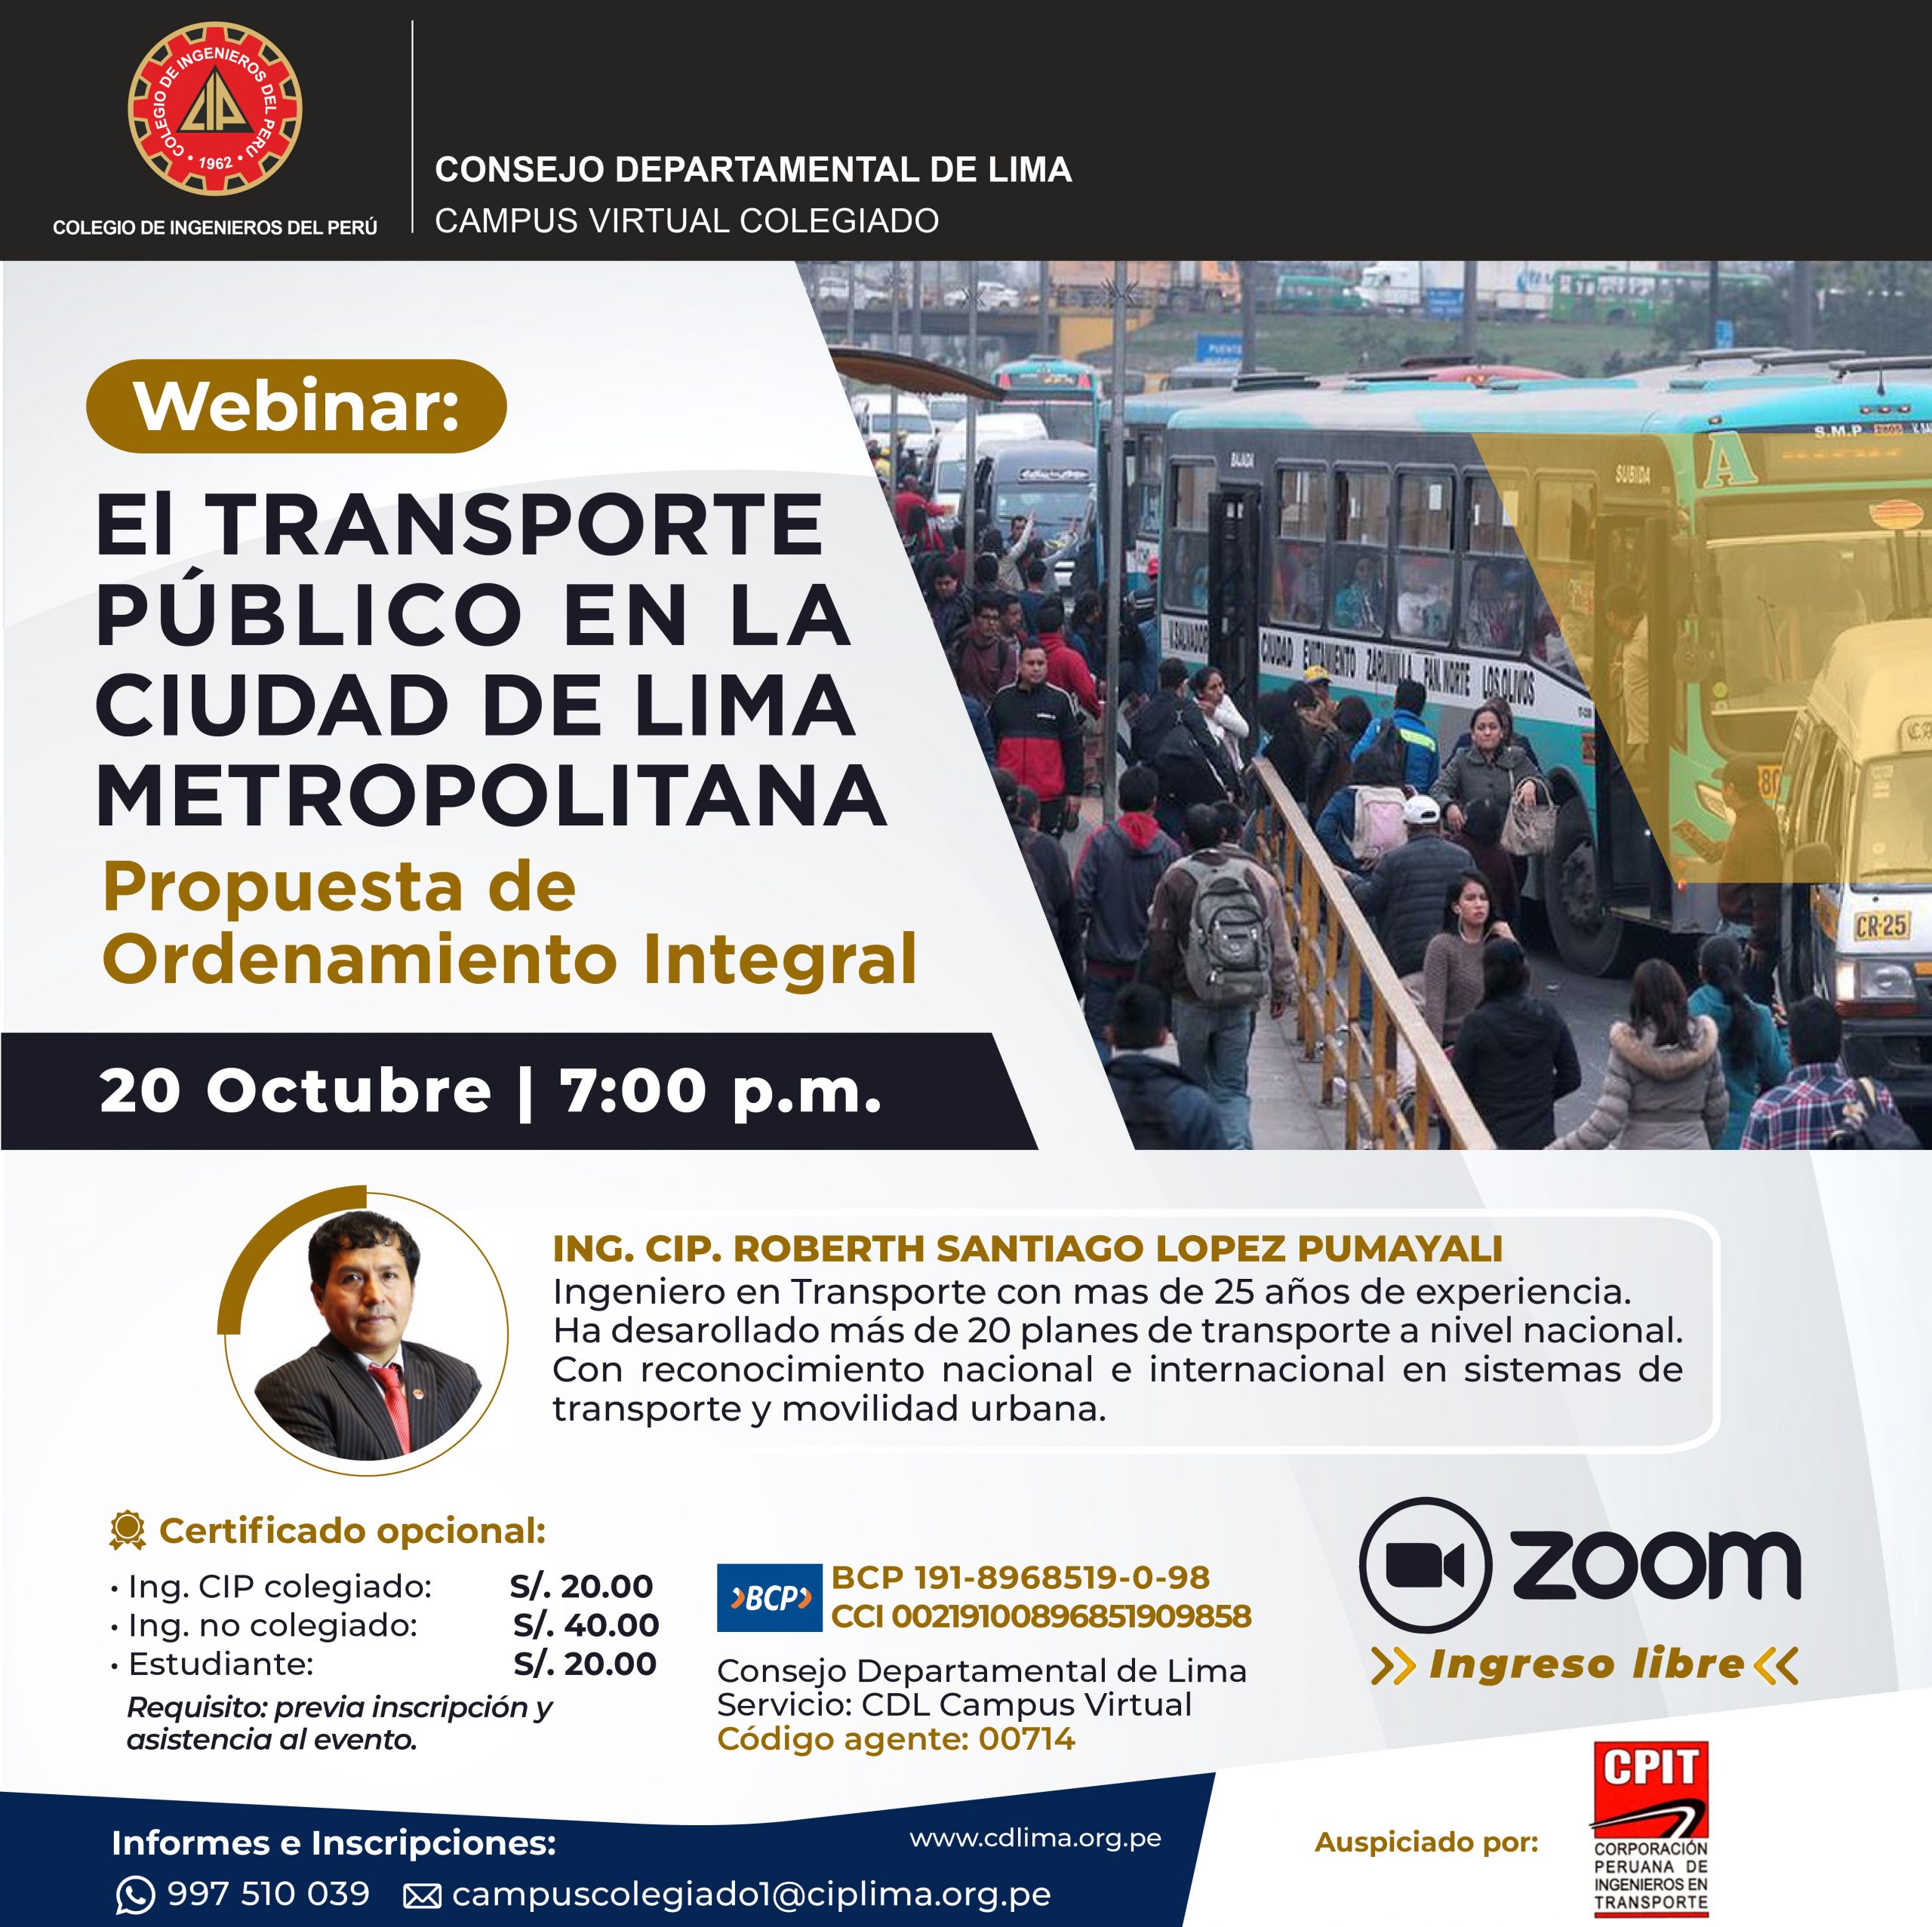 Webinar: El transporte público en la ciudad de Lima Metropolitana propuesta de Ordenamiento Integral